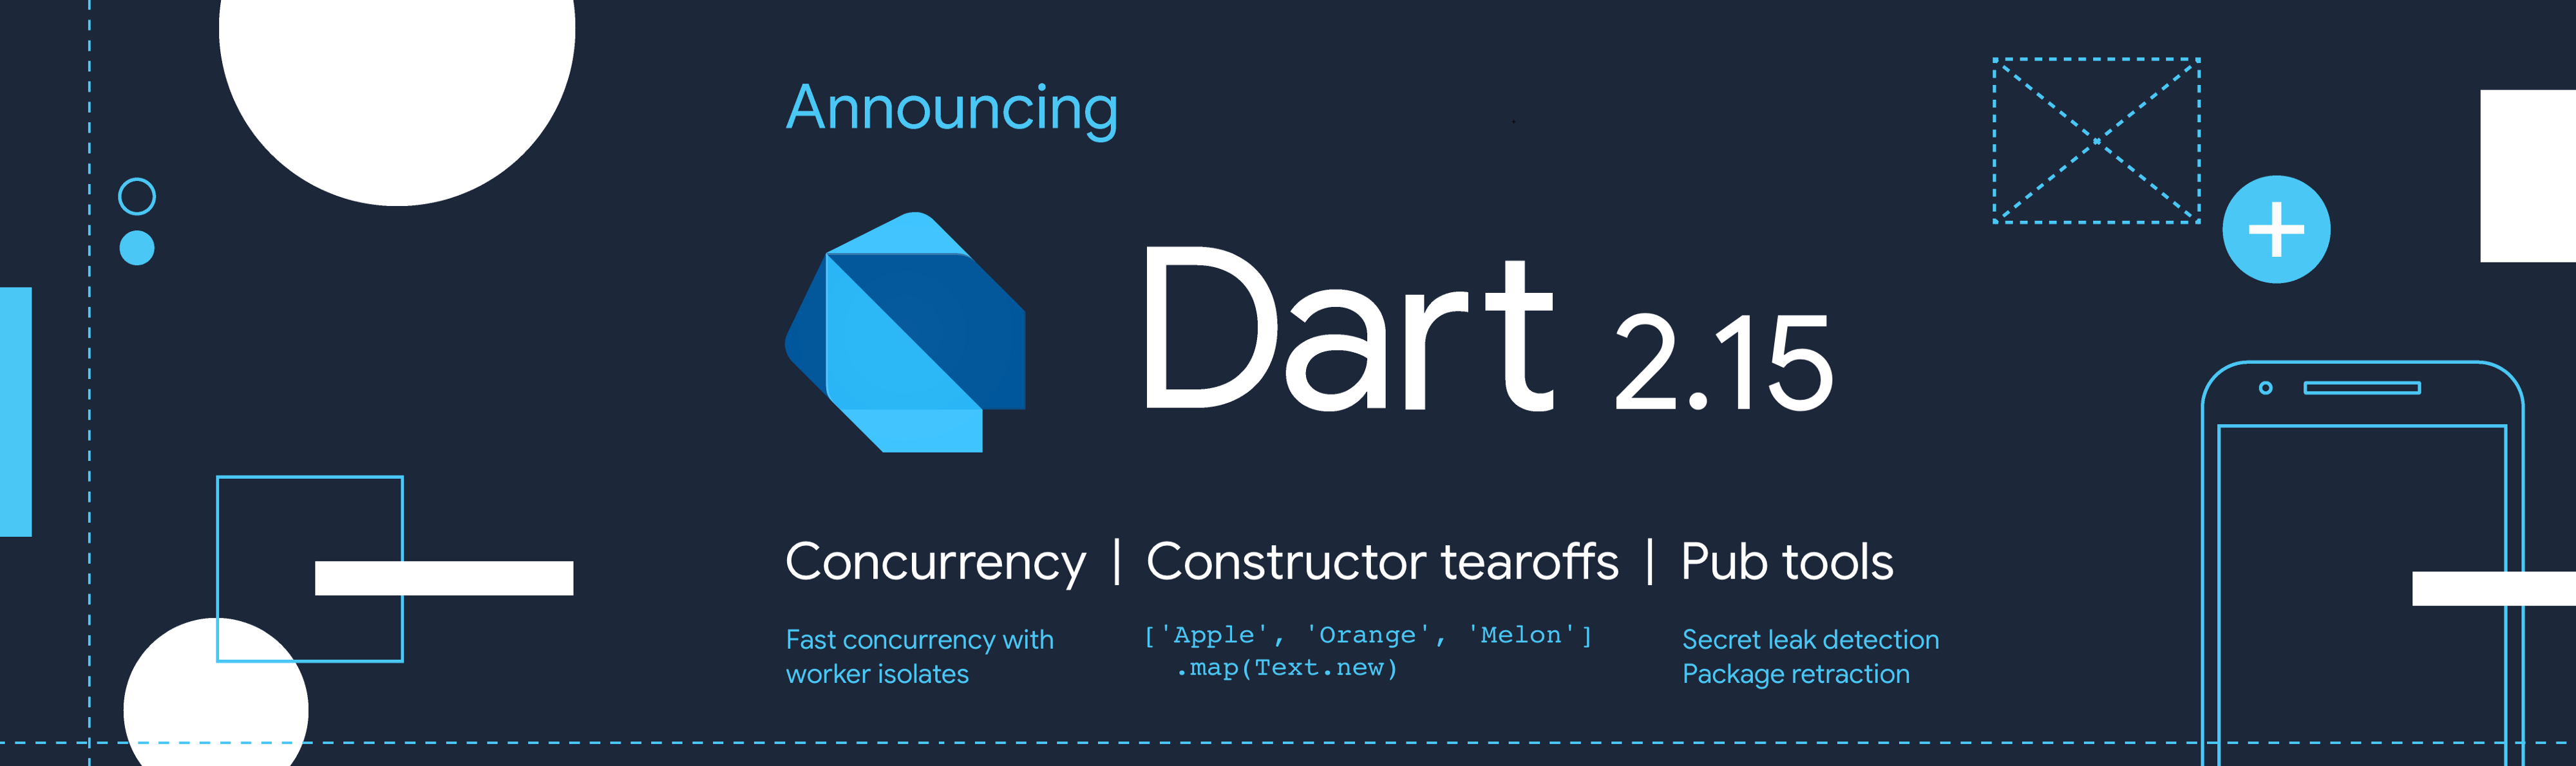 Release Dart 2.15